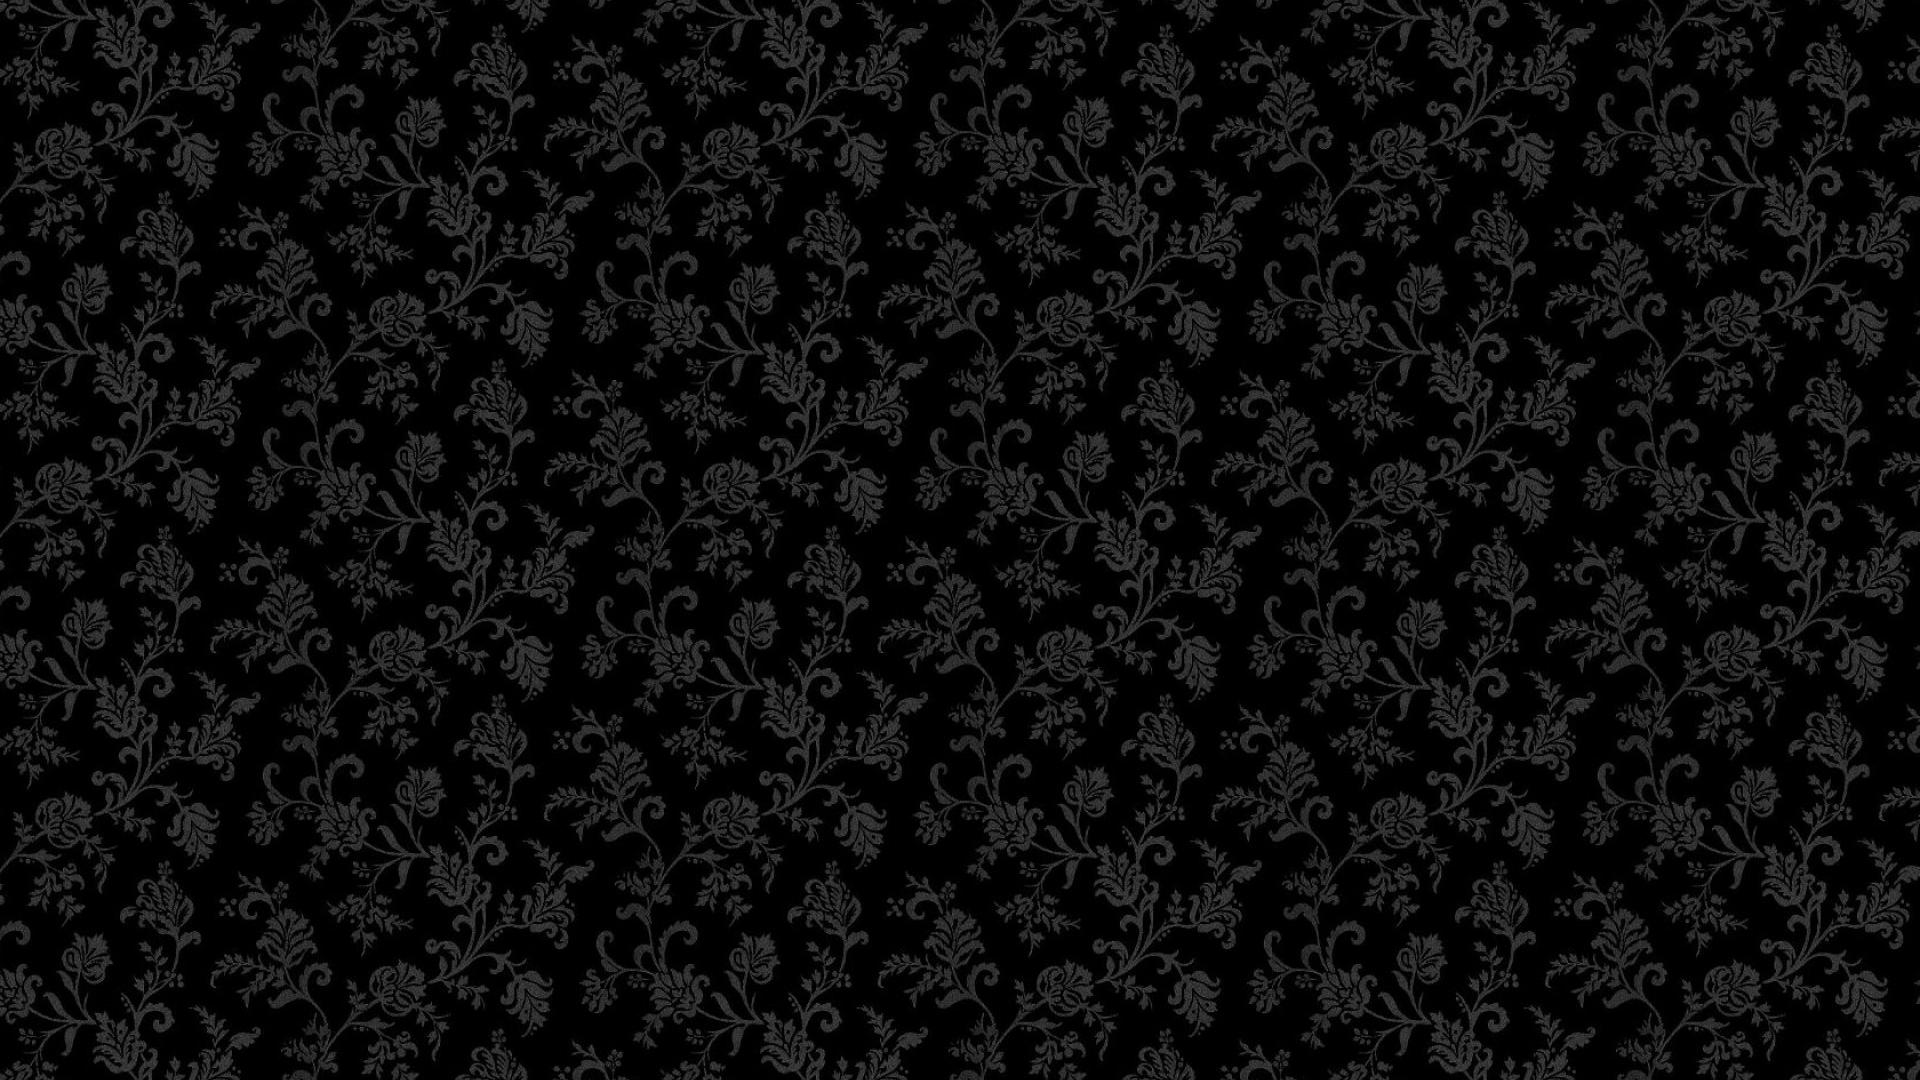 pattern abstract flowers hd wallpaper - (#7998) - HQ Desktop ...